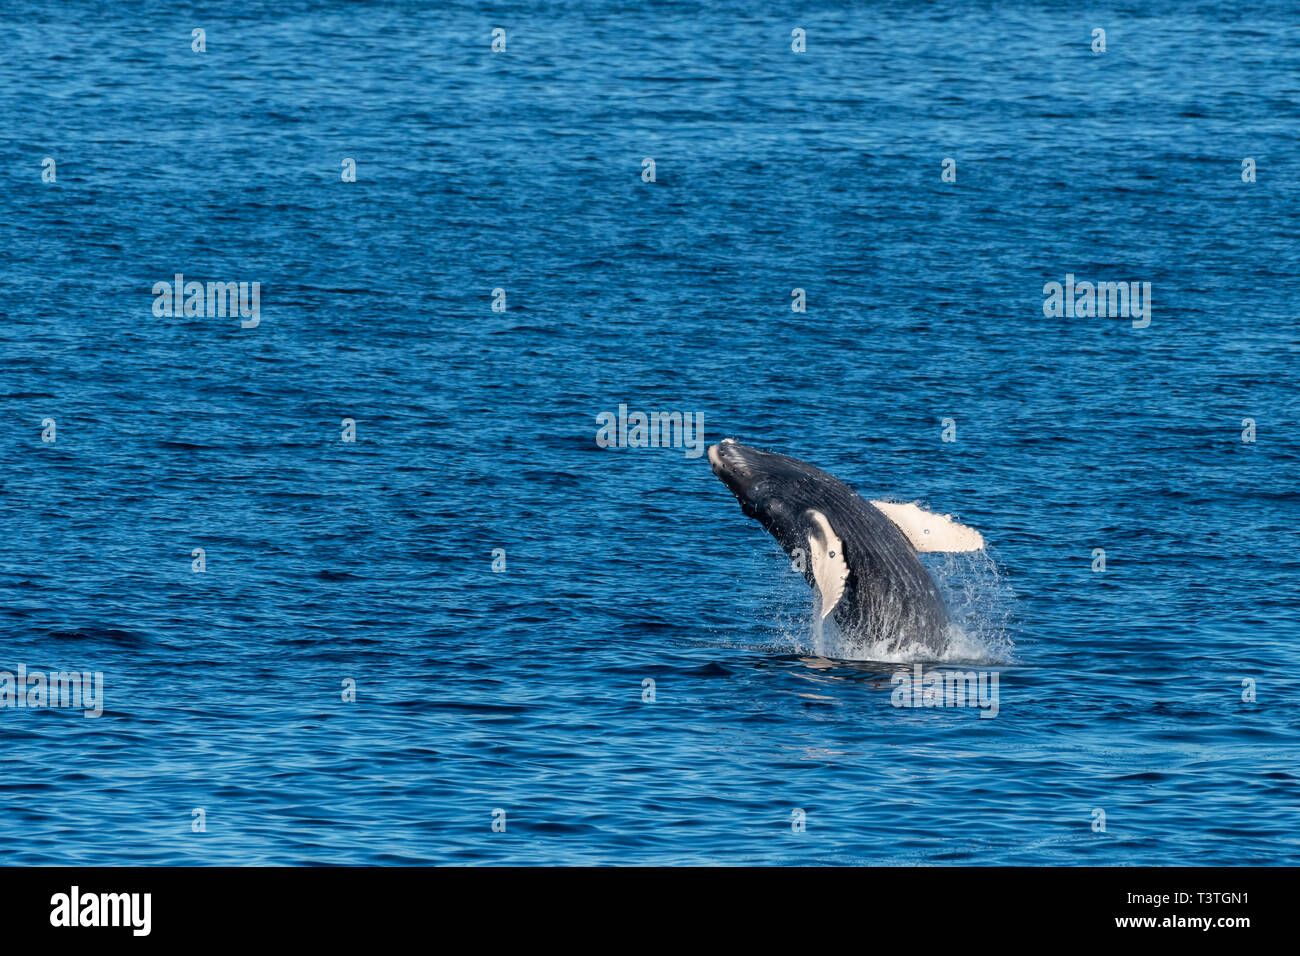 Humpback Whale (Megaptera novaeangliae) breaching off the coast of Baja California, Mexico. Stock Photo